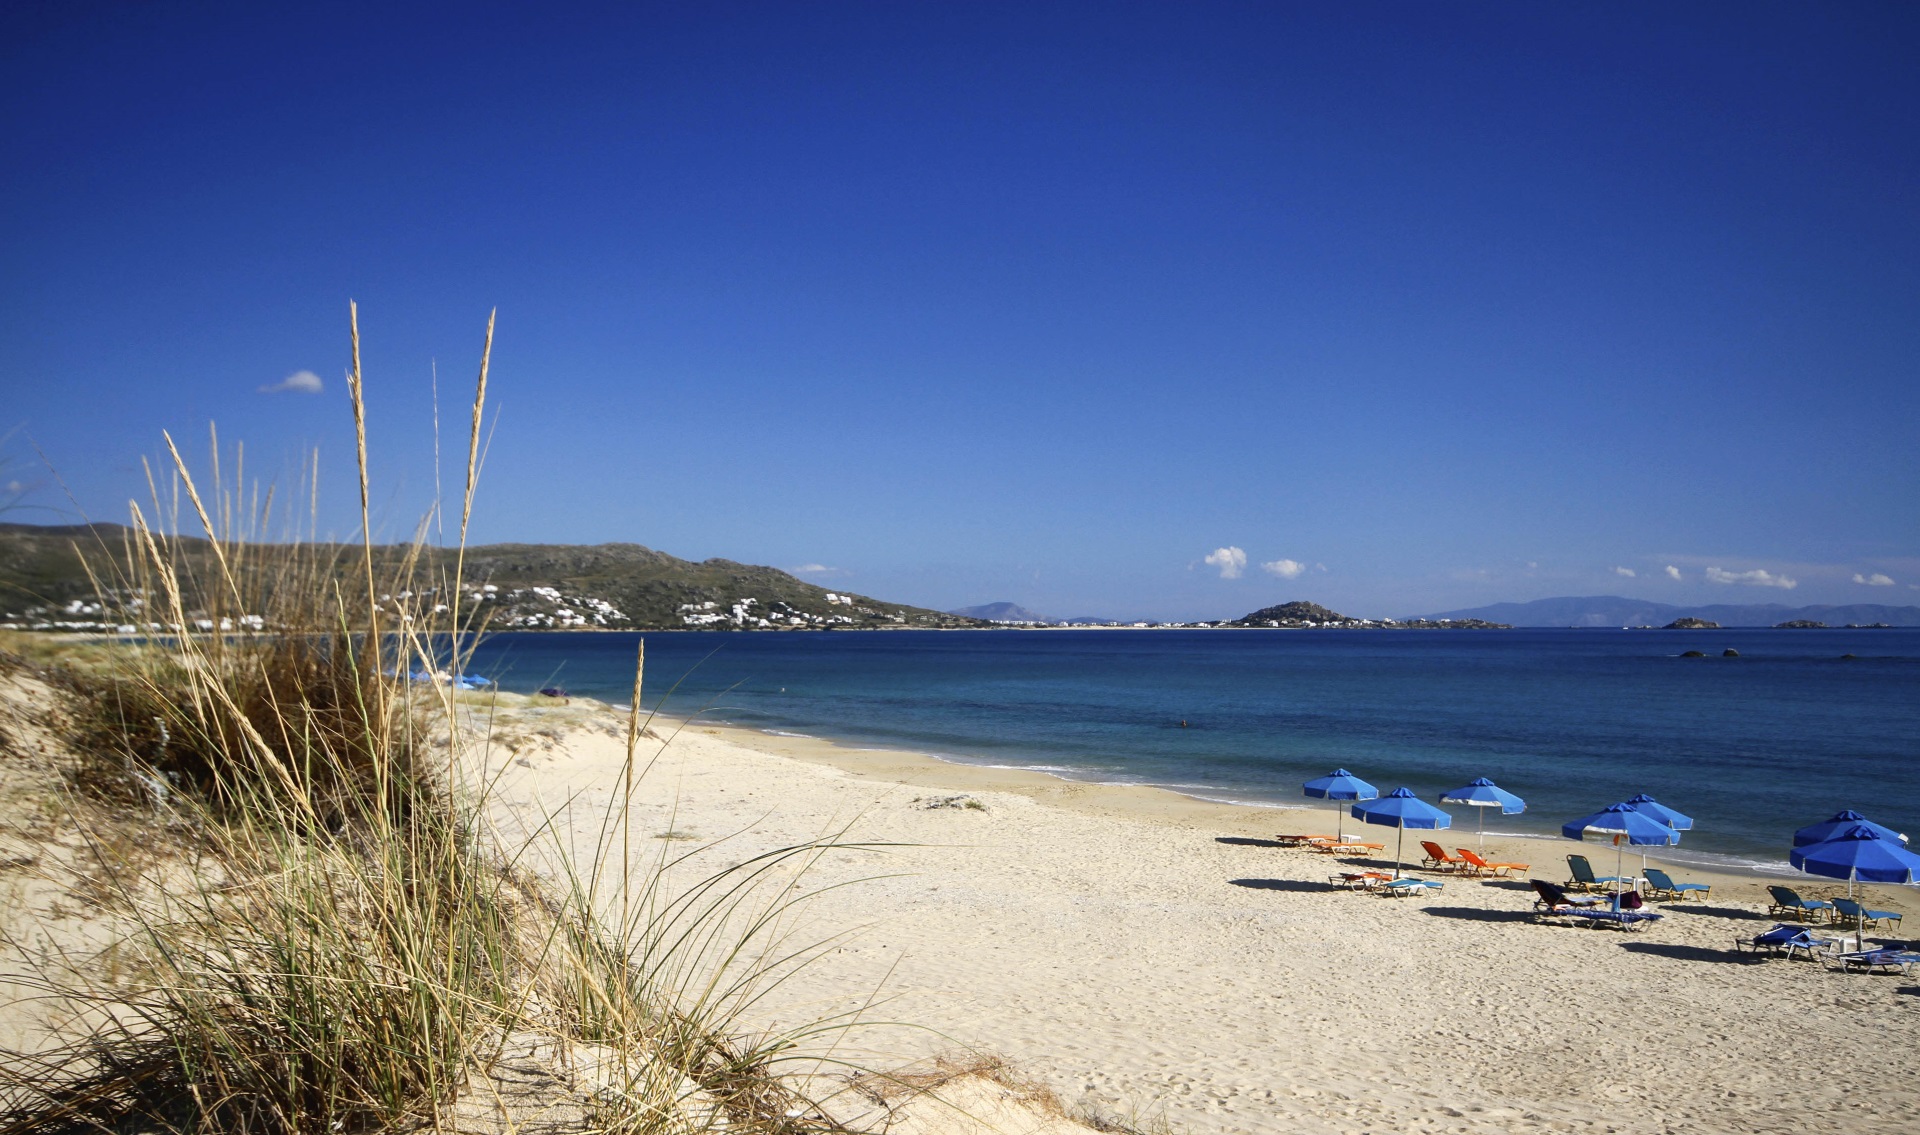 Le spiagge dell’isola di Naxos: